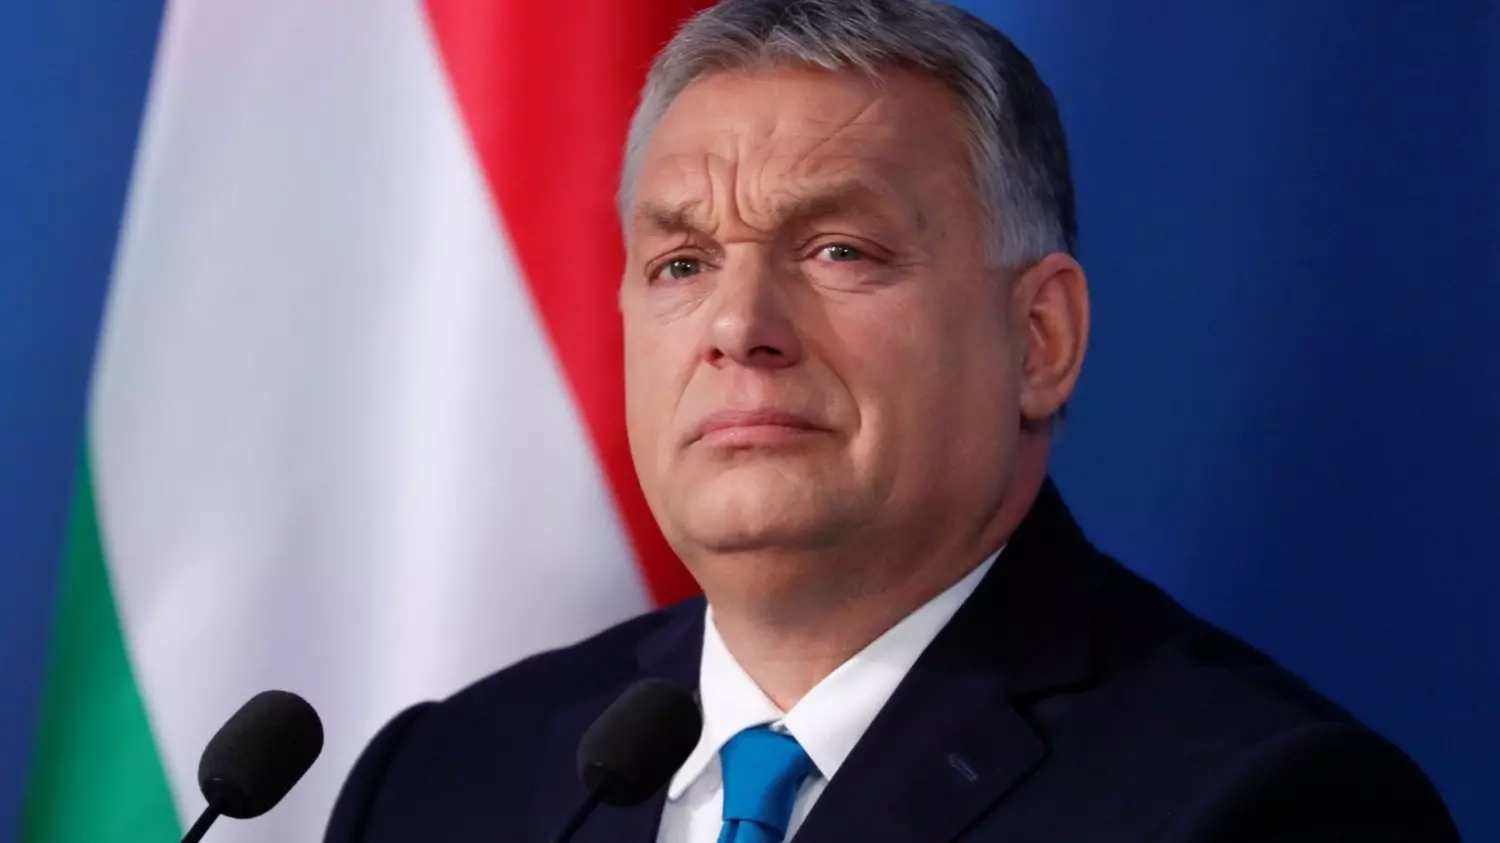 Орбан уверен, что Трамп оказывает все большее влияние на вопросы внешней политики.